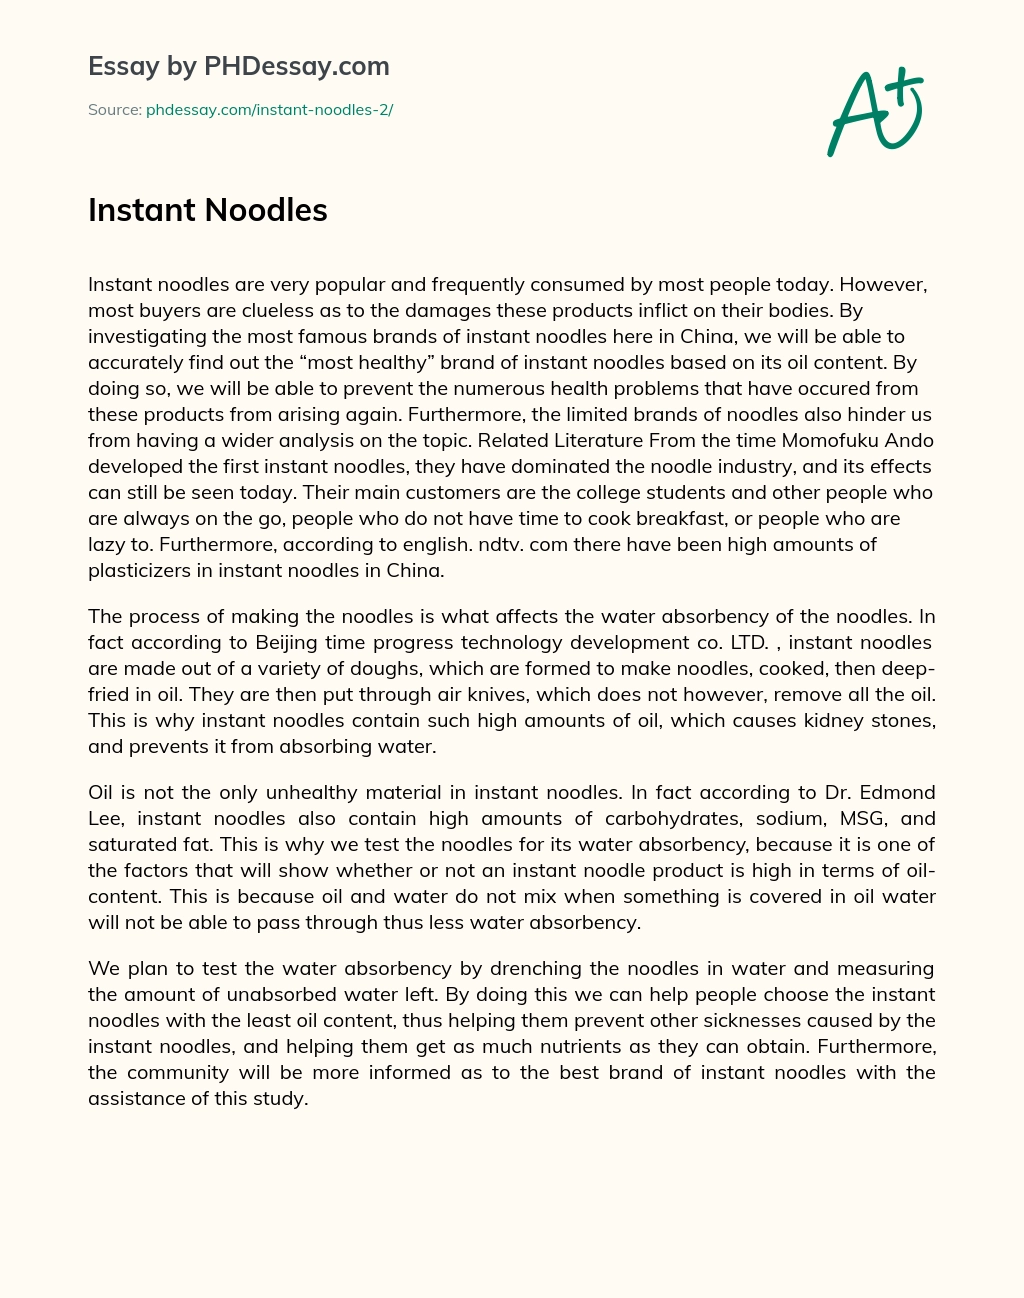 Instant Noodles essay